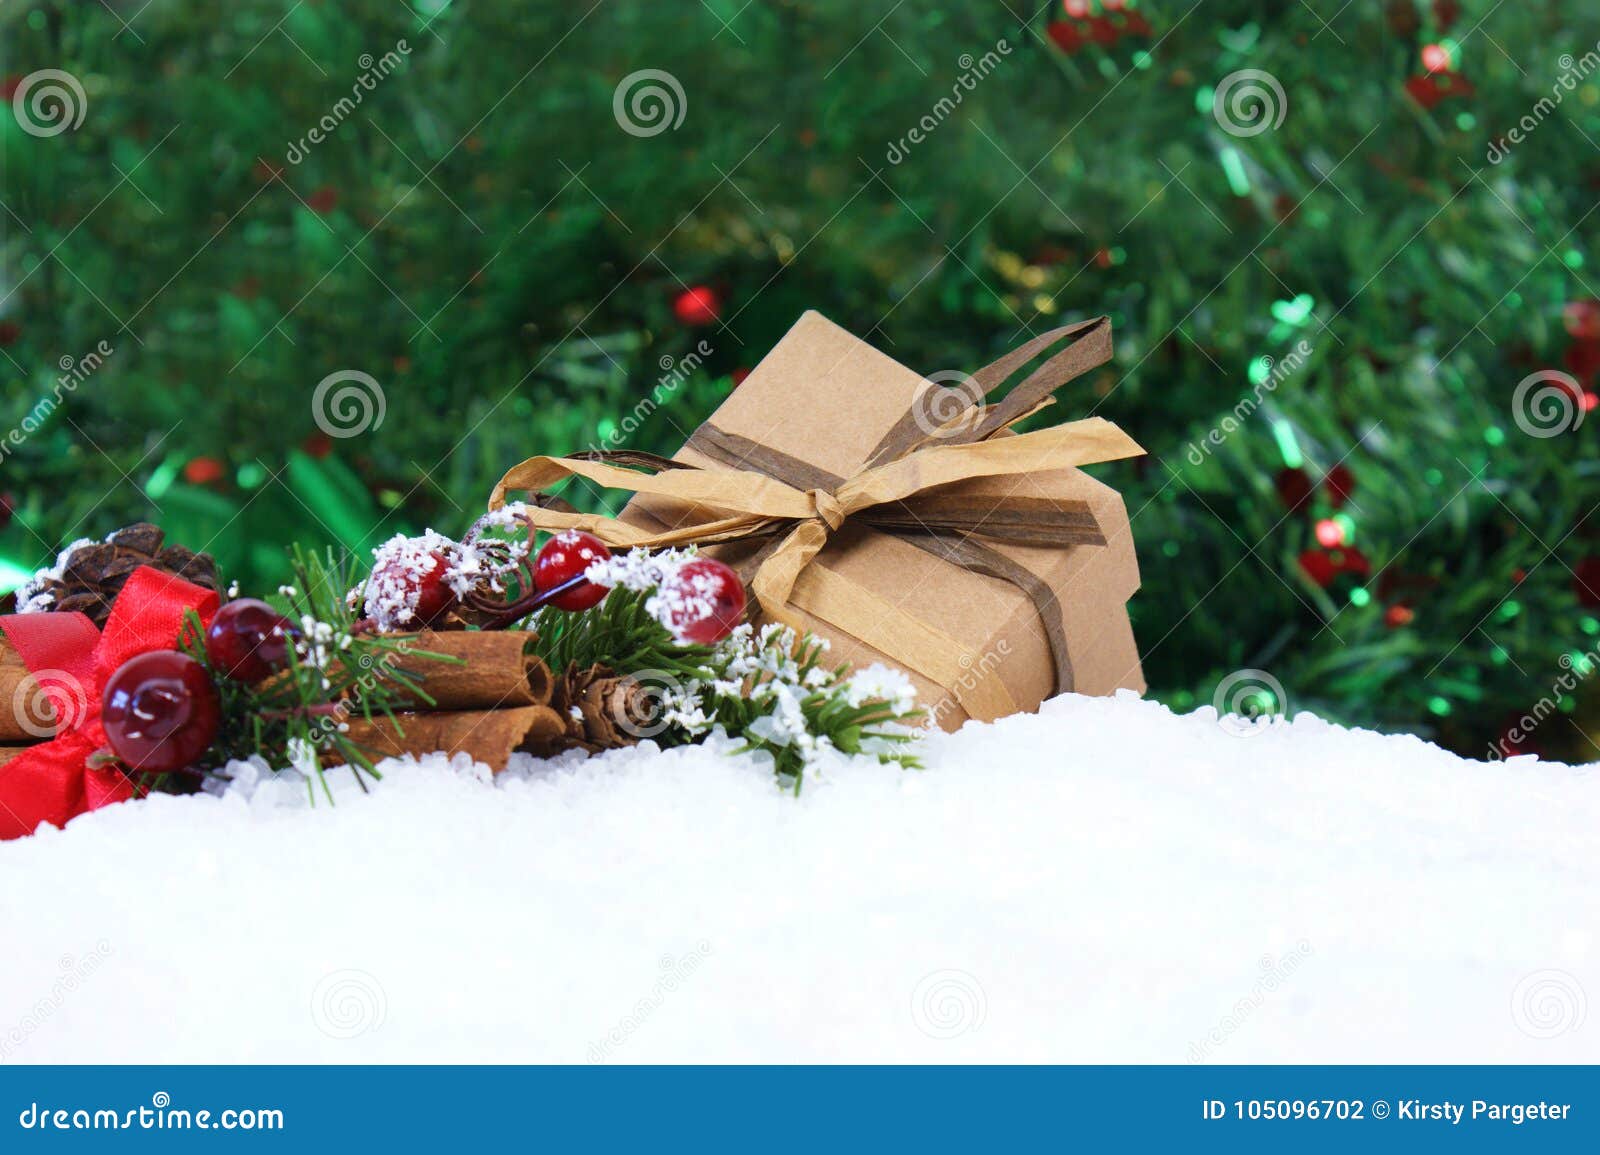 Regalo e decorazioni di Natale accoccolati in neve. Il regalo e le decorazioni di Natale si sono accoccolati in neve con il fondo delle luci del bokeh